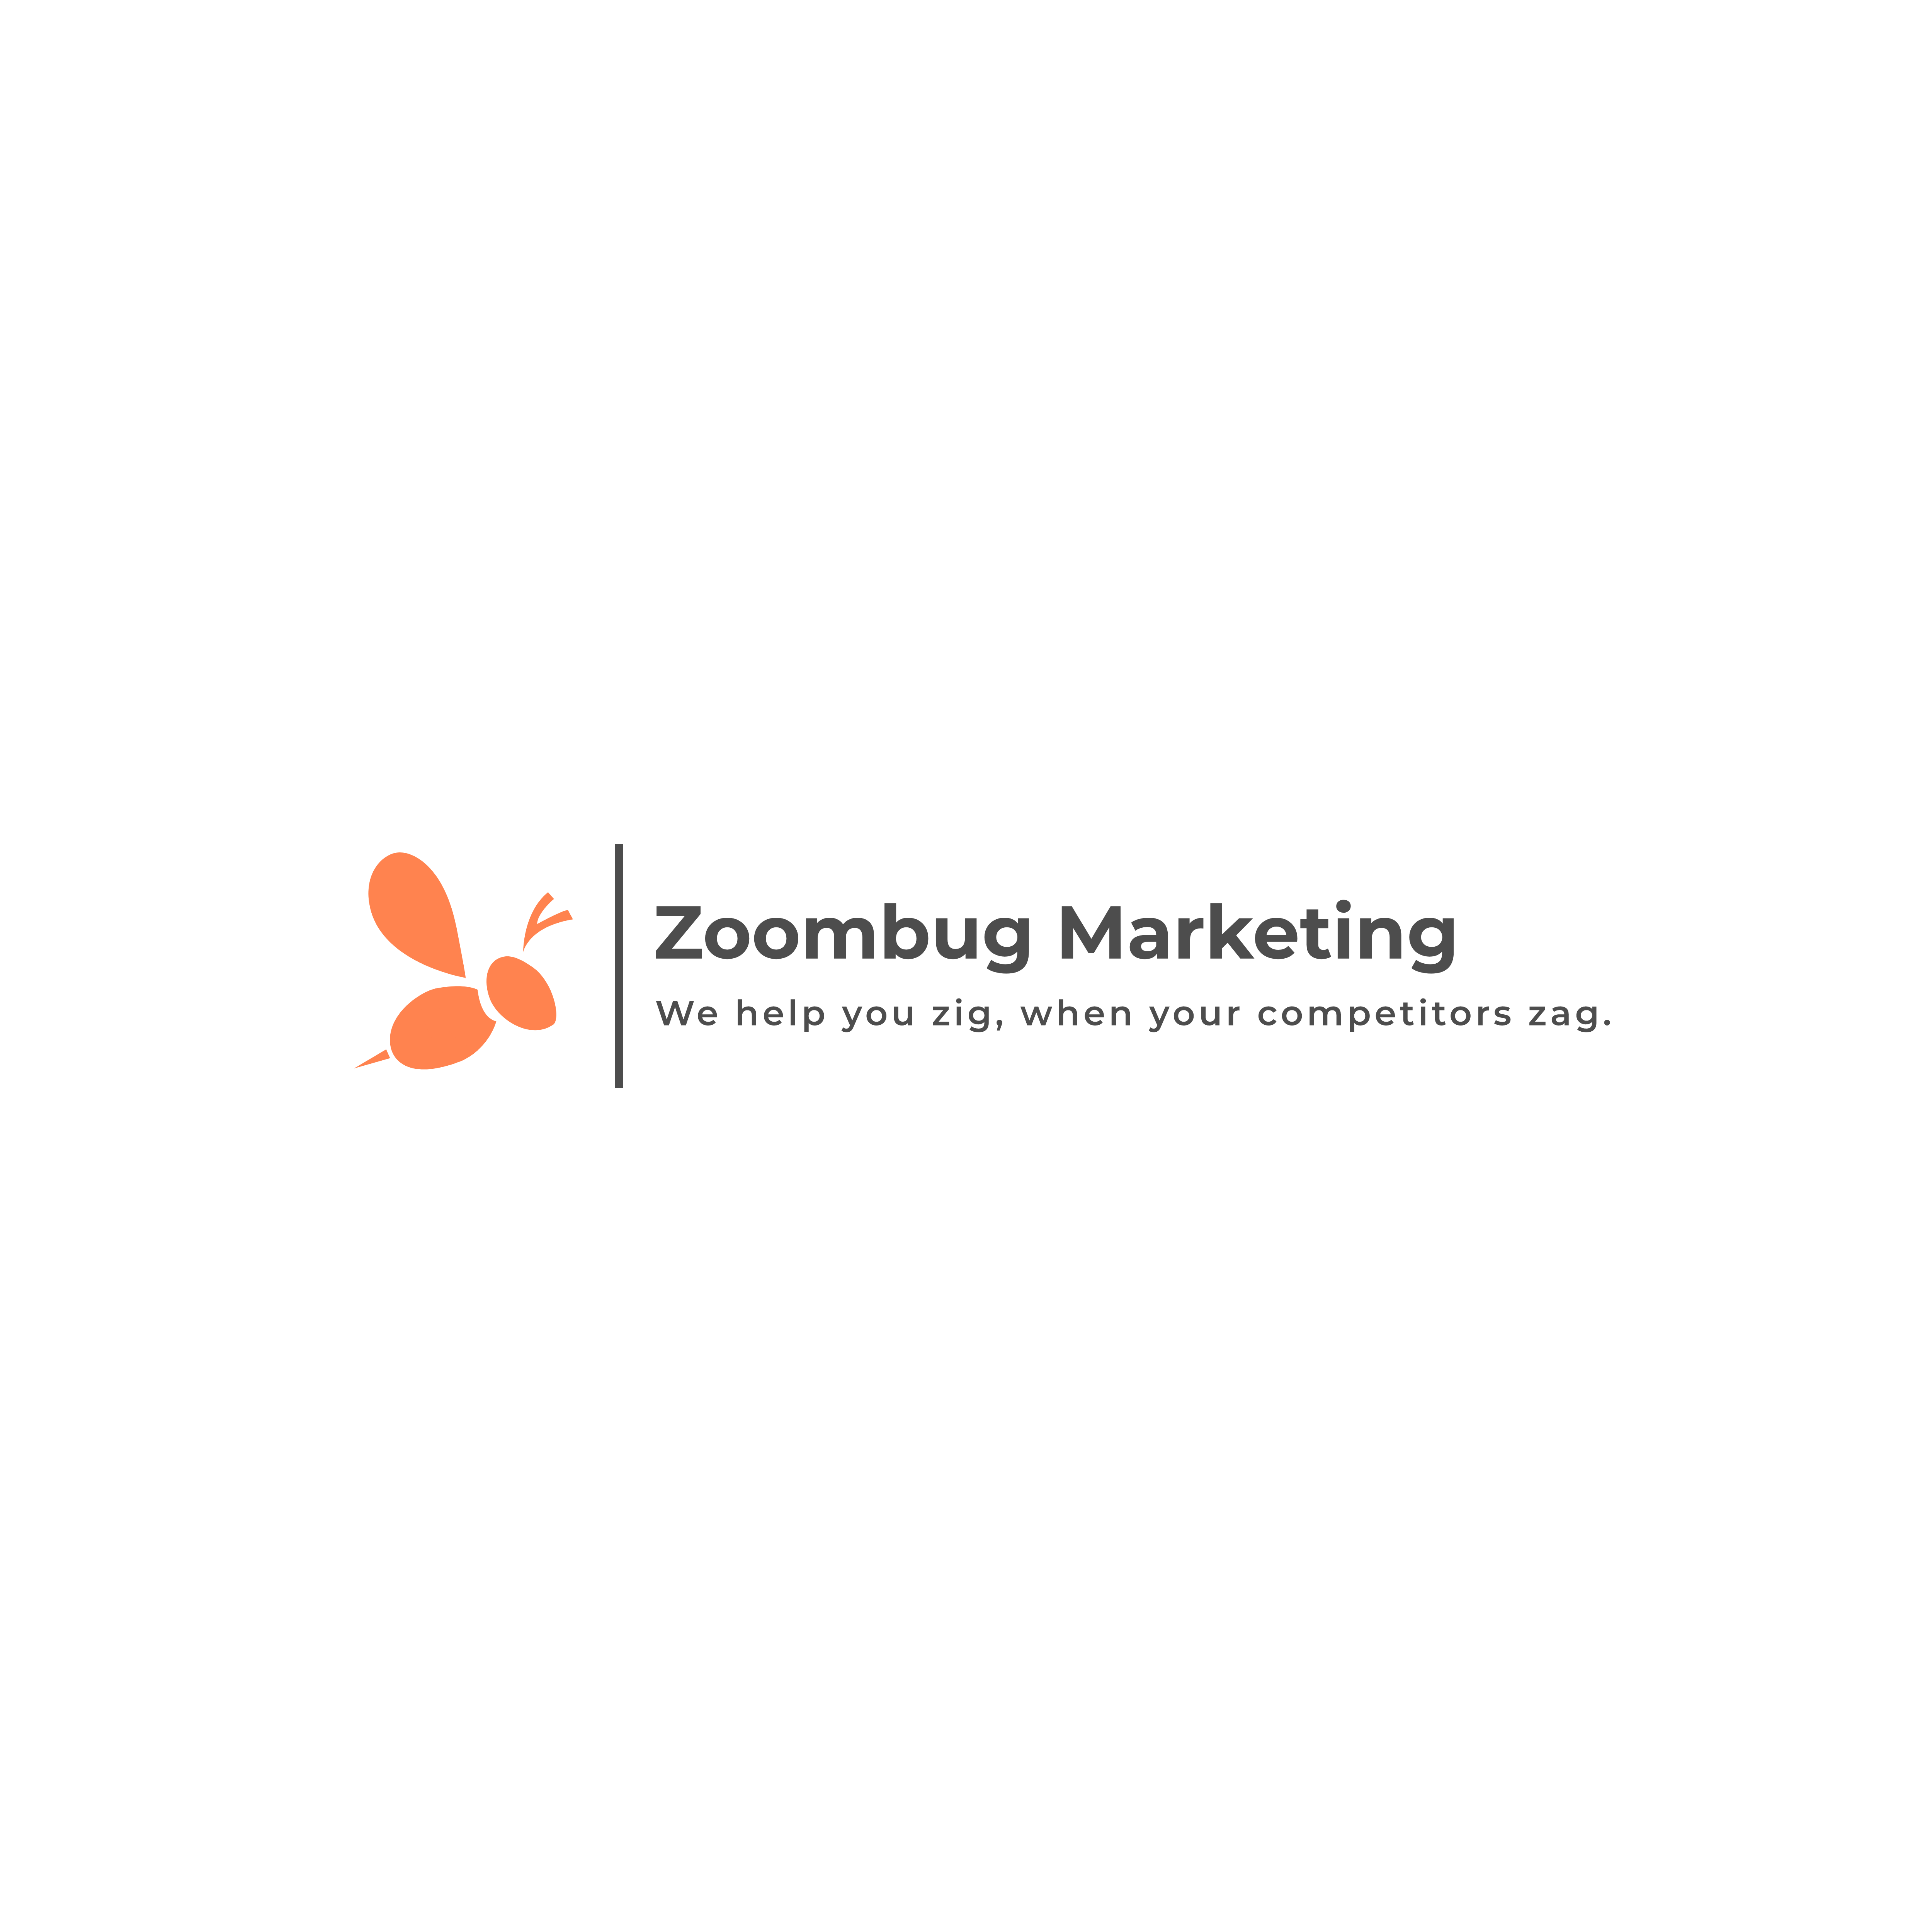 Zoombug Marketing